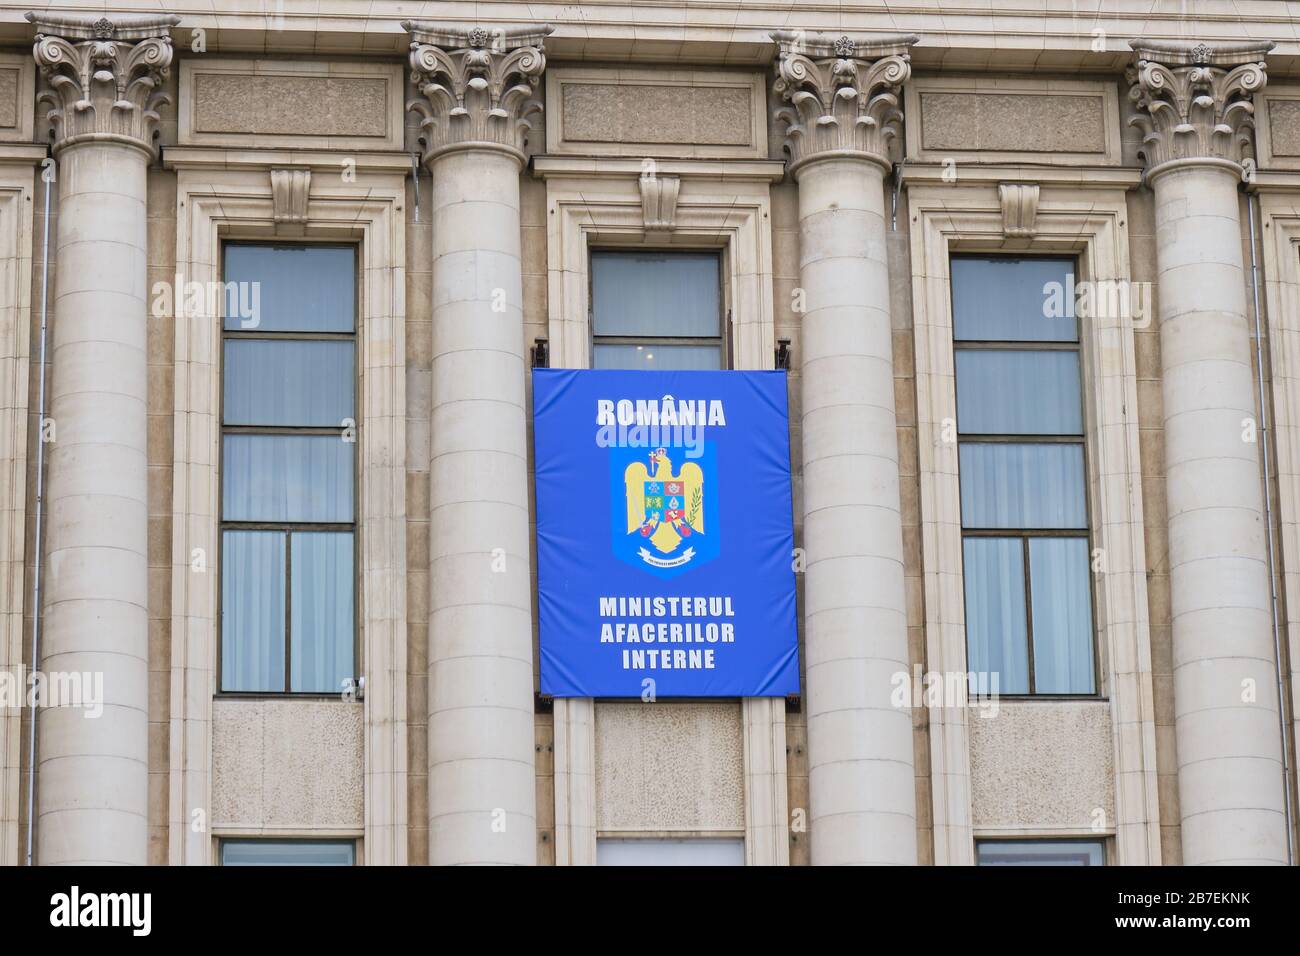 Bucarest, Romania - 14 marzo 2020: Emblema con stemma per il Ministero degli Affari interni in Romania (rumeno: Ministerul Afacerilor Interne Foto Stock